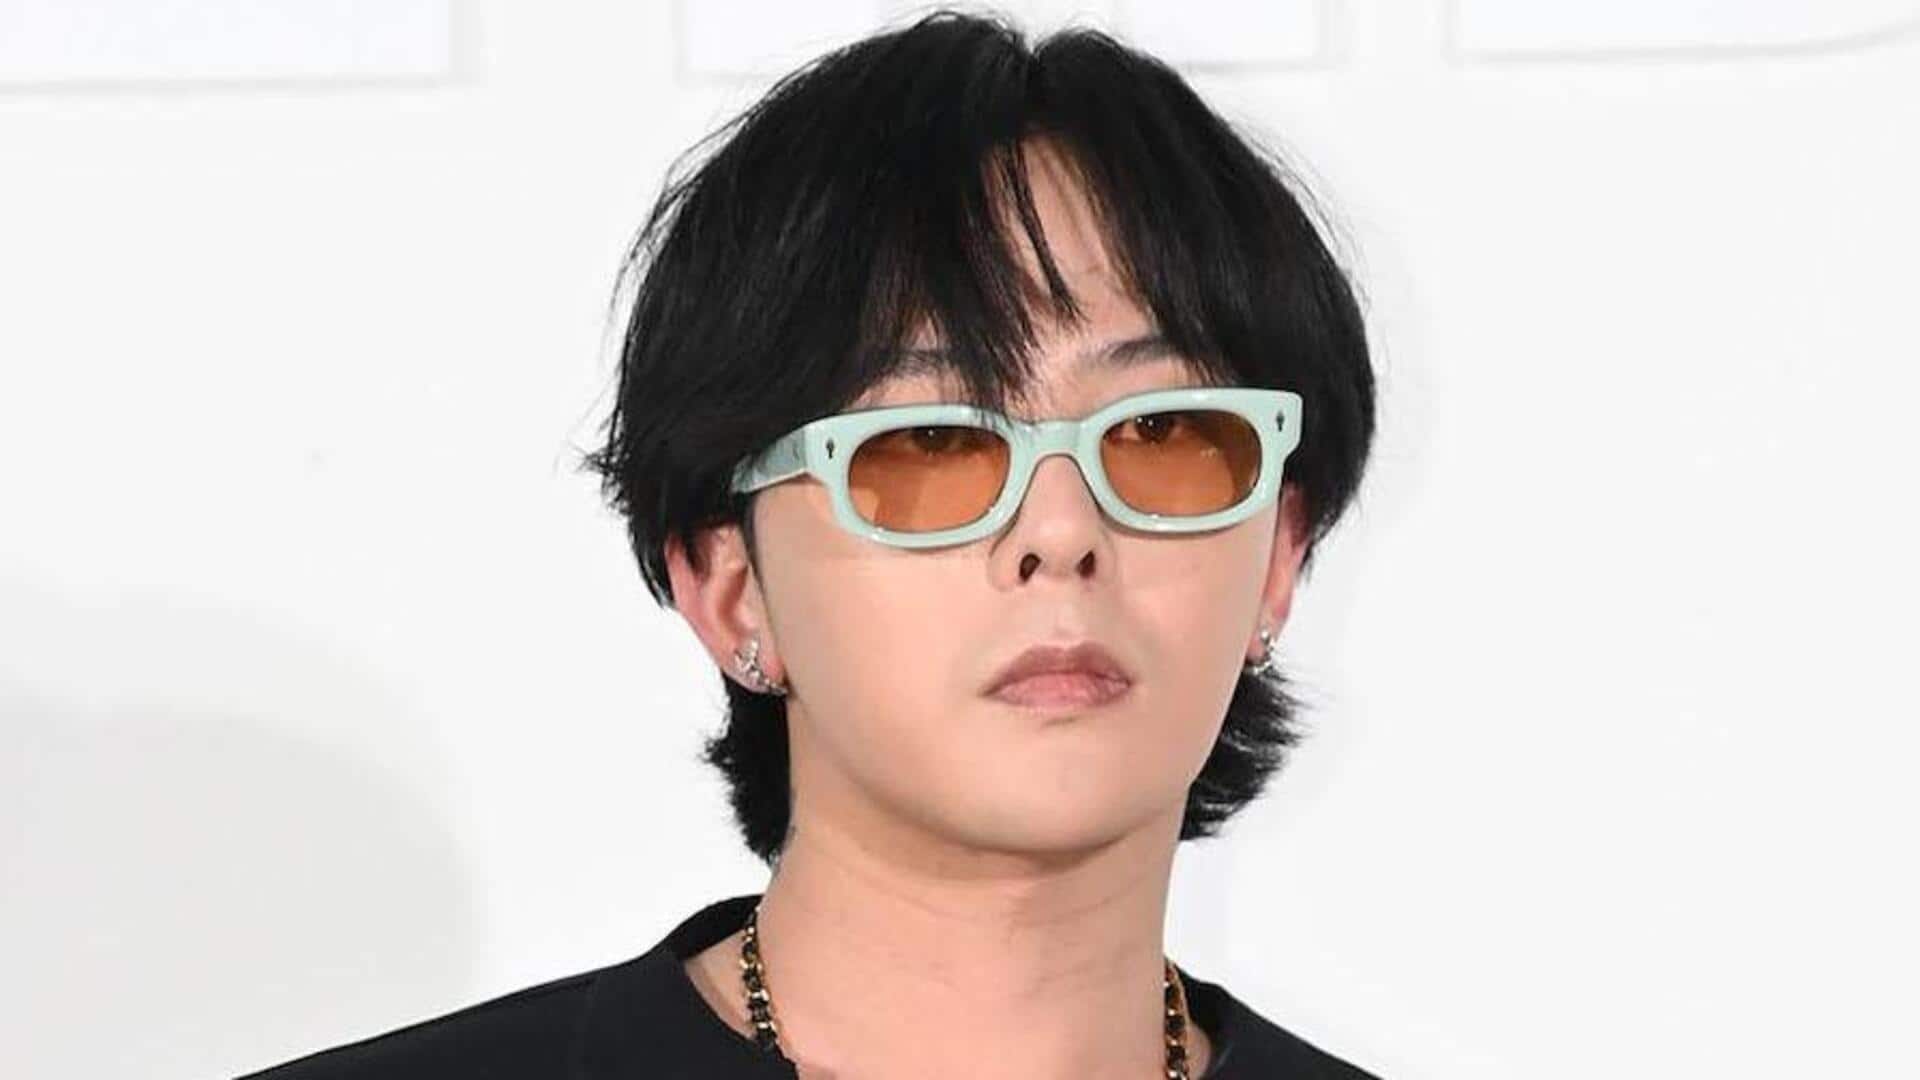 Korean rapper-singer G-Dragon breaks silence post drug test